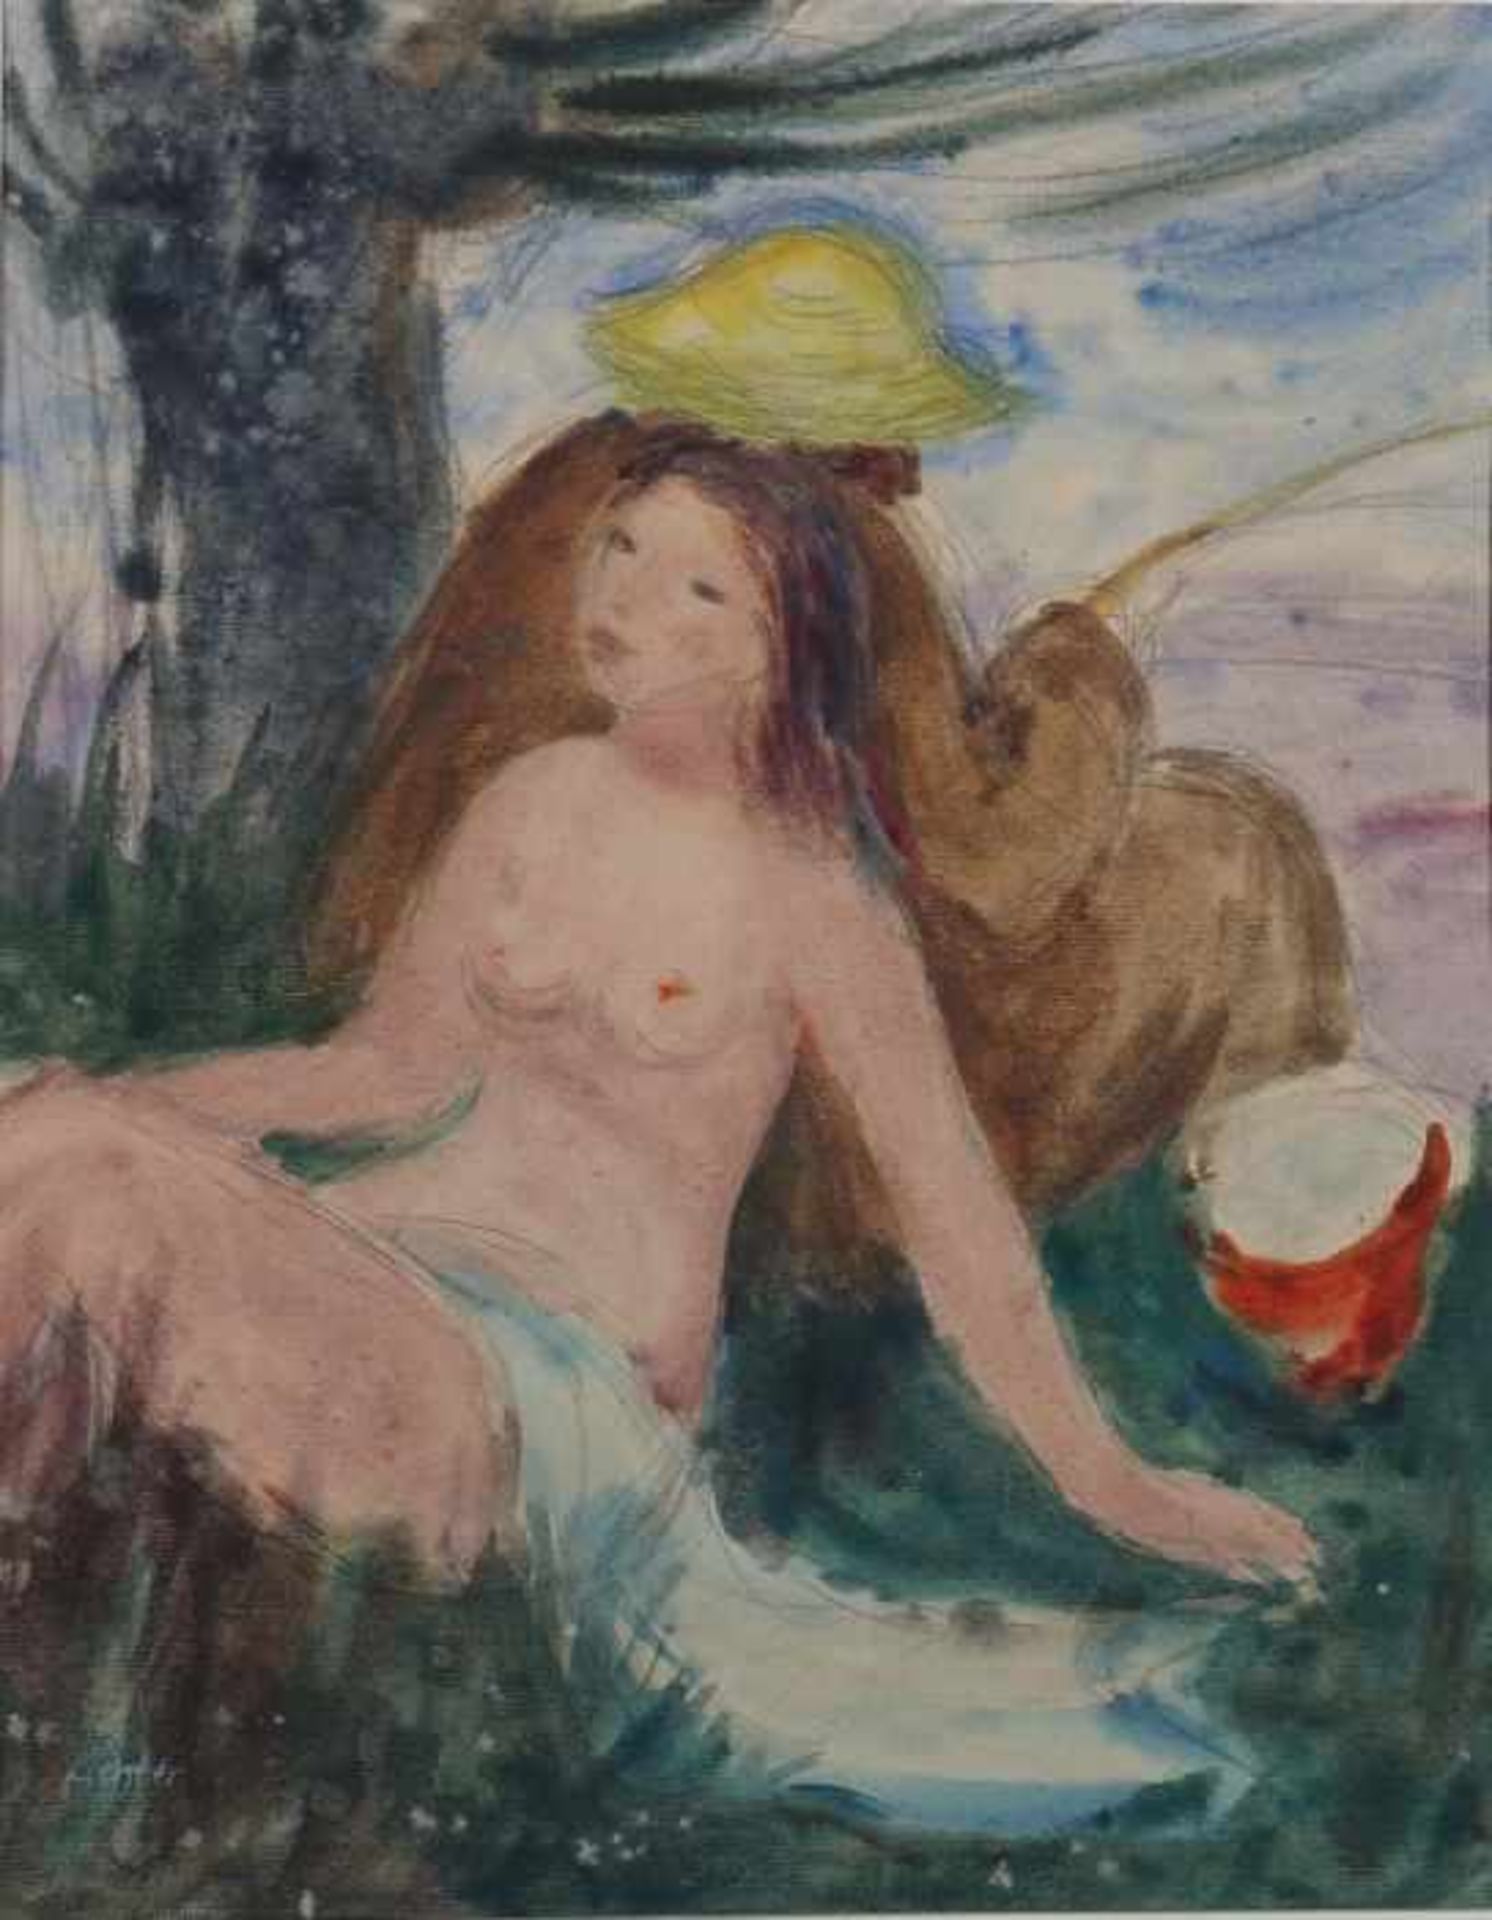 Lichter, Alfred 1917 - 2012, deutscher Maler und Bildhauer. 4x "Damen", 1x "Frauenakt sitzend", - Bild 4 aus 6